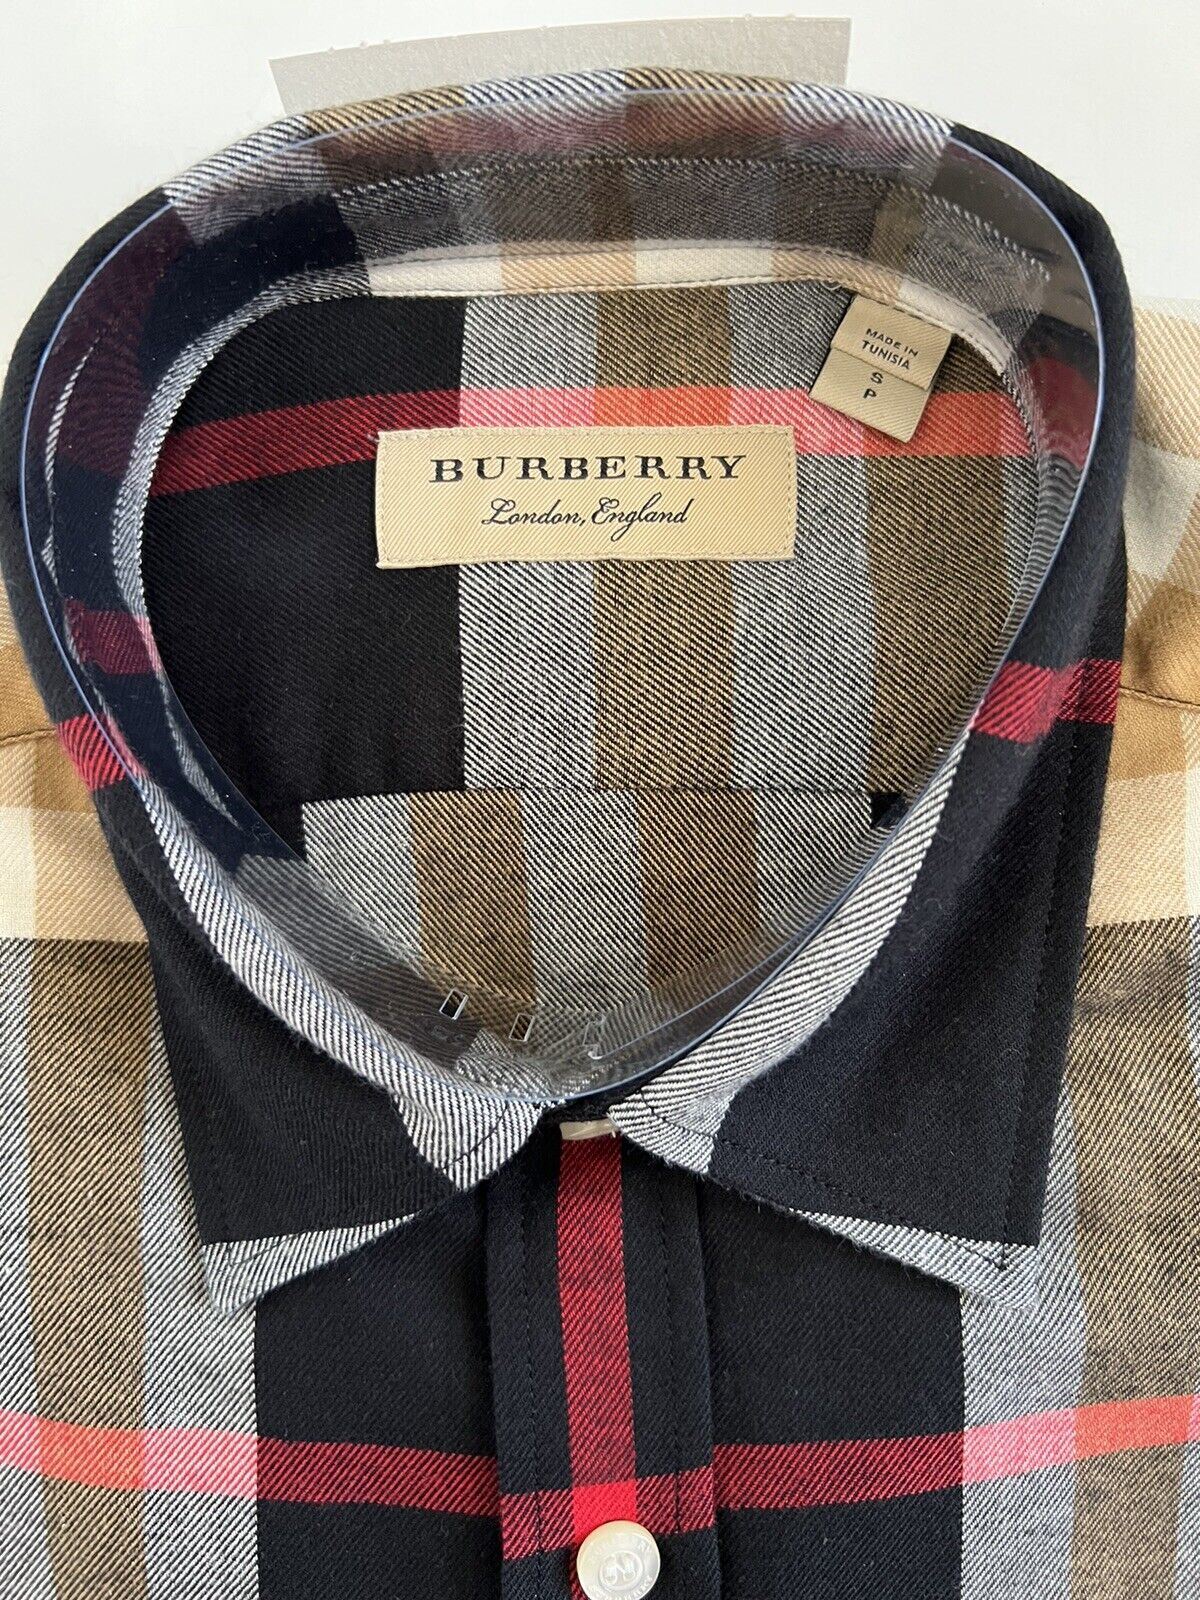 Neu mit Etikett: 390 $ Burberry Herren-Hemd mit Knopfleiste, schwarz kariert, Baumwolle, 2XL